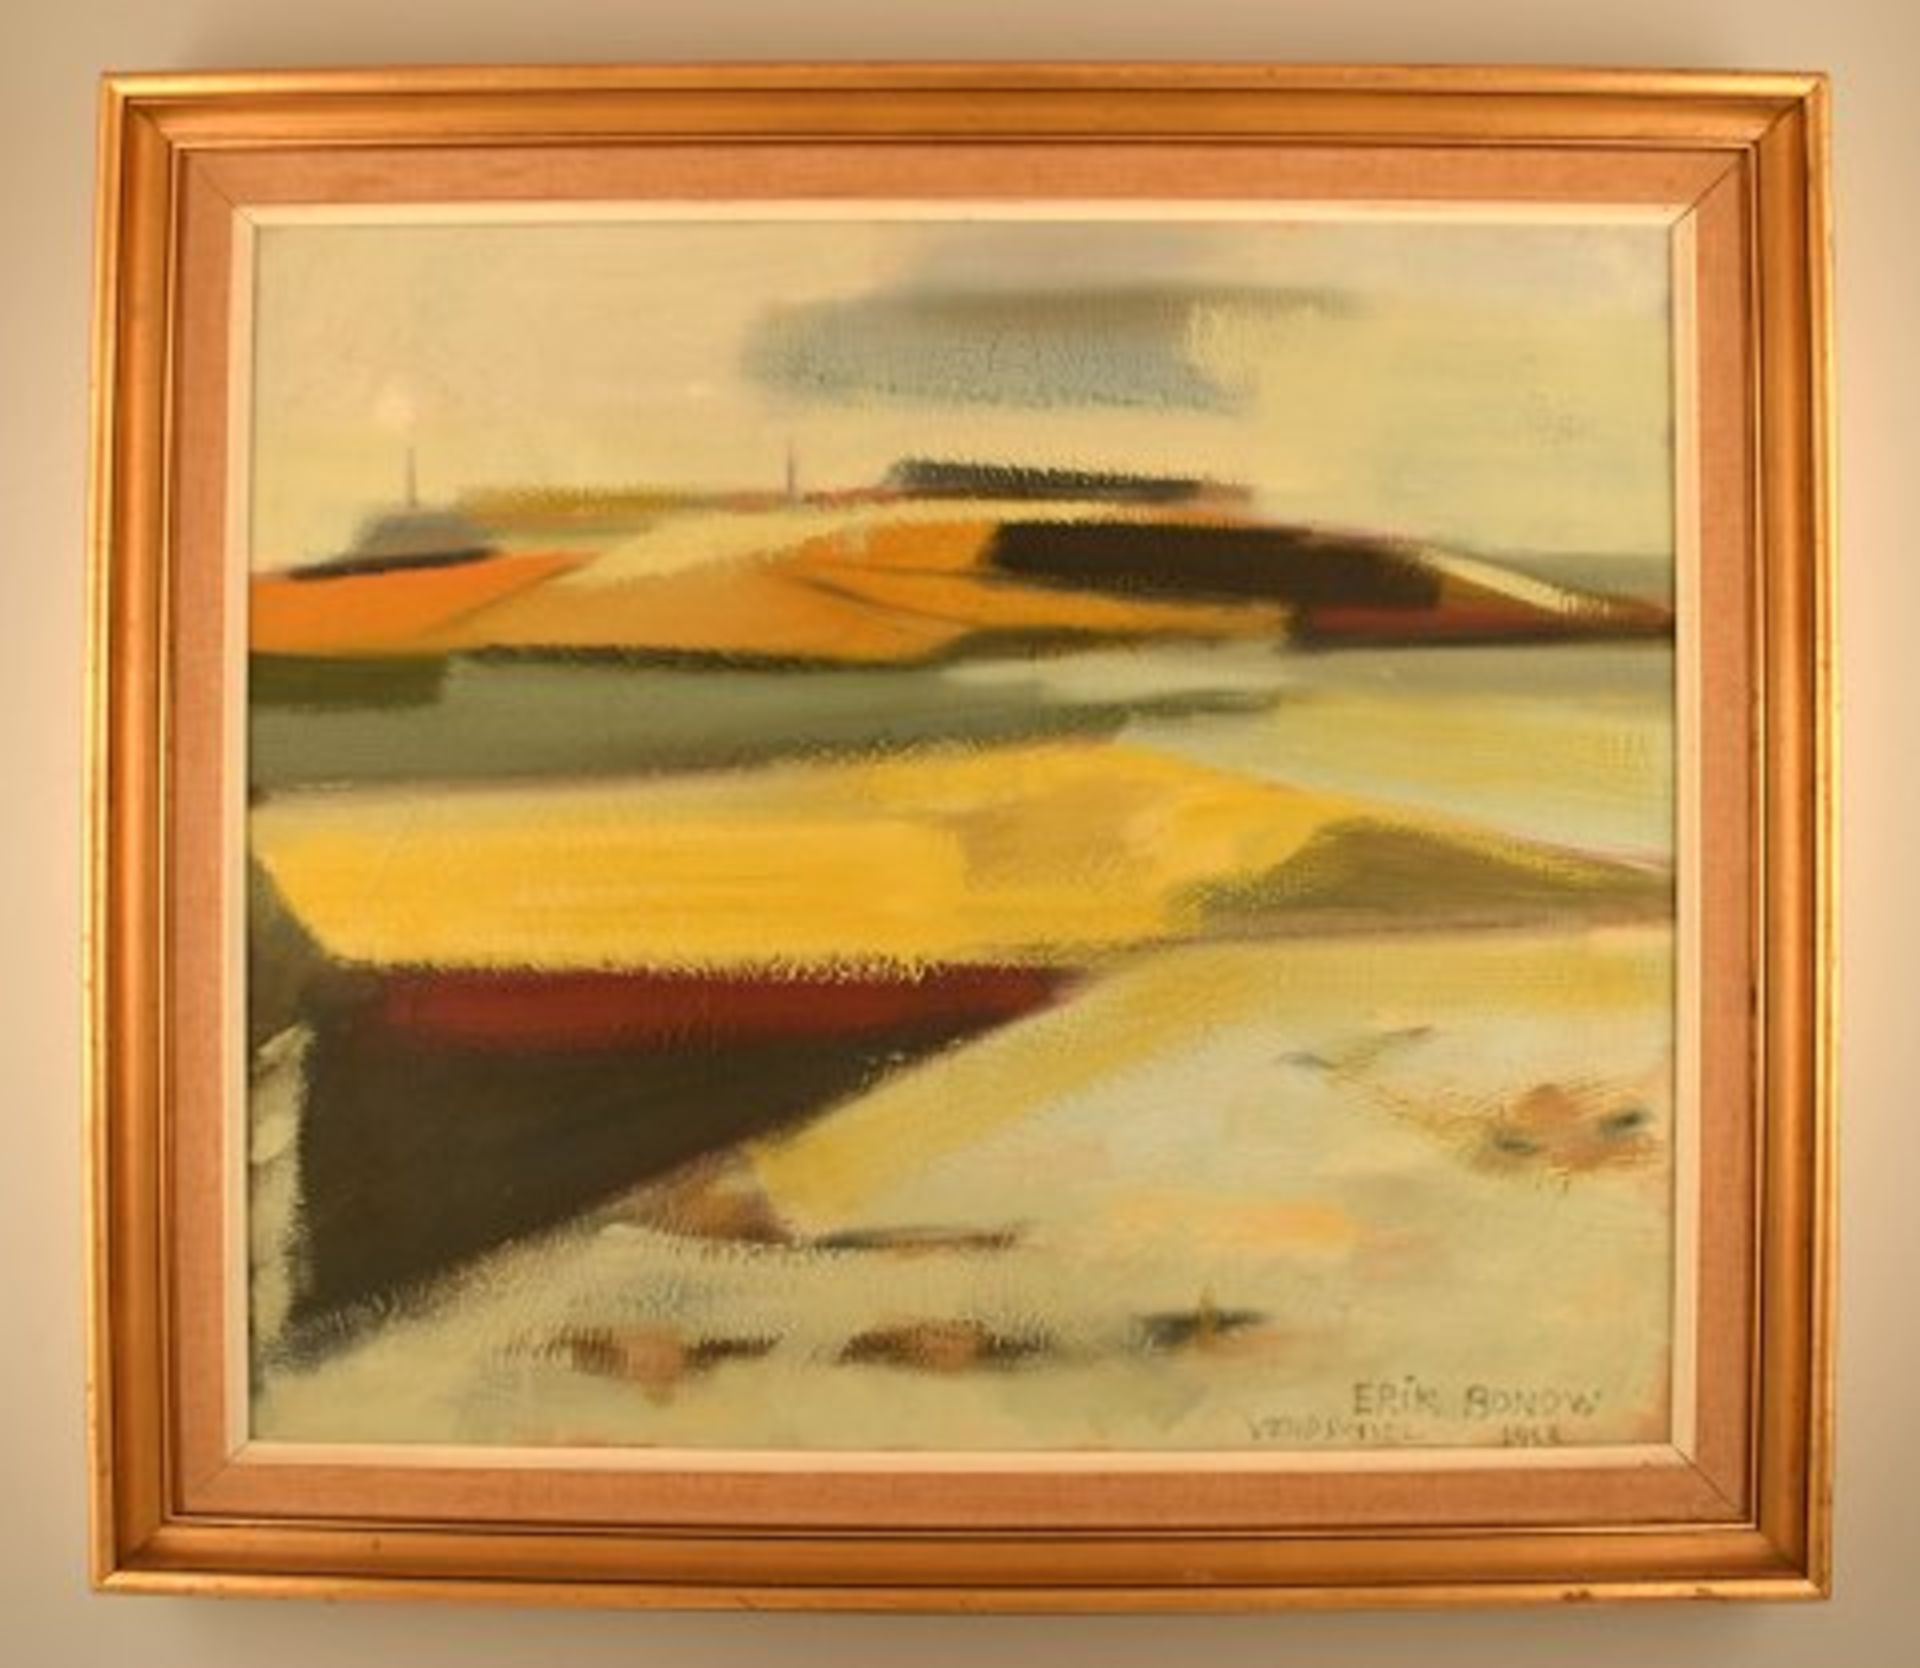 Erik Bonow, dänischer Maler. Öl auf Leinwand. "Vendsyssel", 1963. Sig. Ca. 59x69cm. KOSTENLOSER